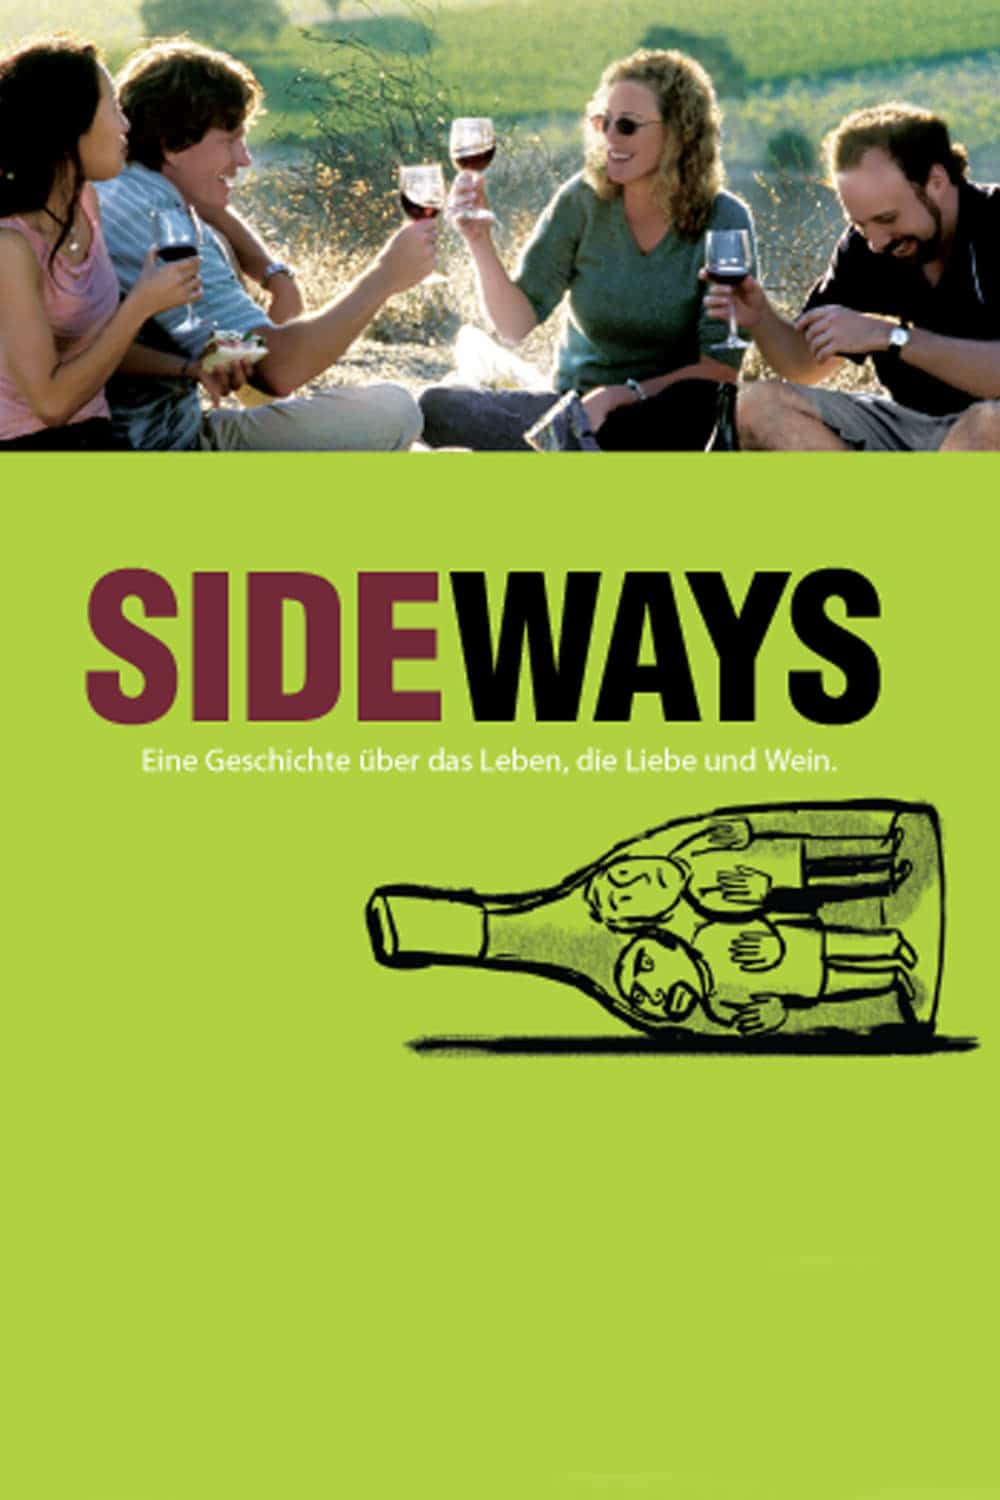 Plakat von "Sideways"